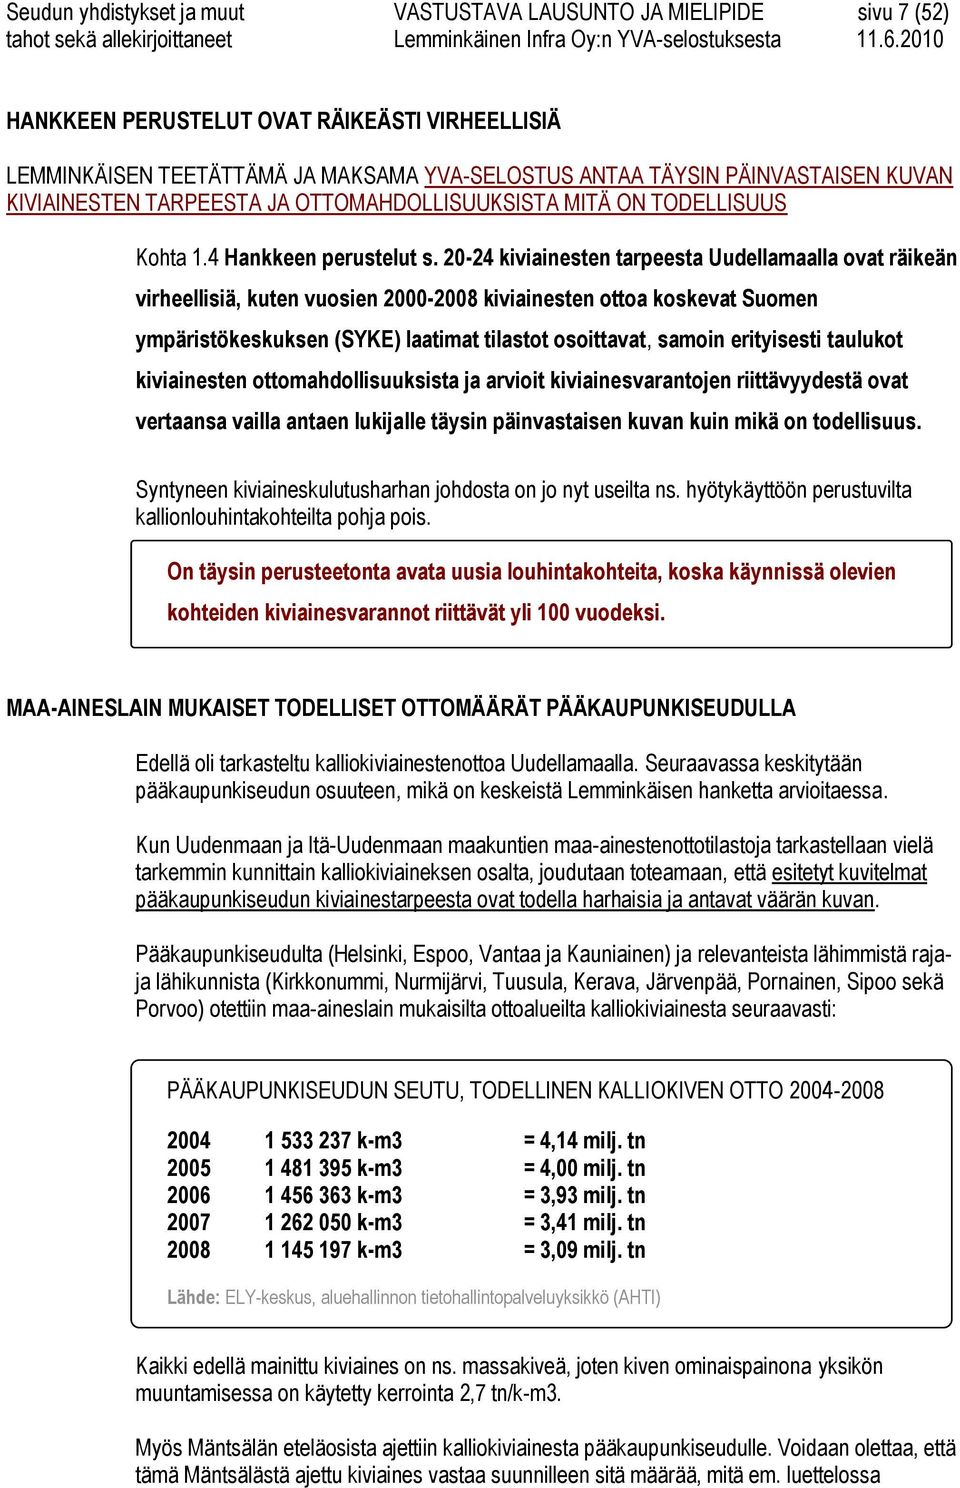 20-24 kiviainesten tarpeesta Uudellamaalla ovat räikeän virheellisiä, kuten vuosien 2000-2008 kiviainesten ottoa koskevat Suomen ympäristökeskuksen (SYKE) laatimat tilastot osoittavat, samoin